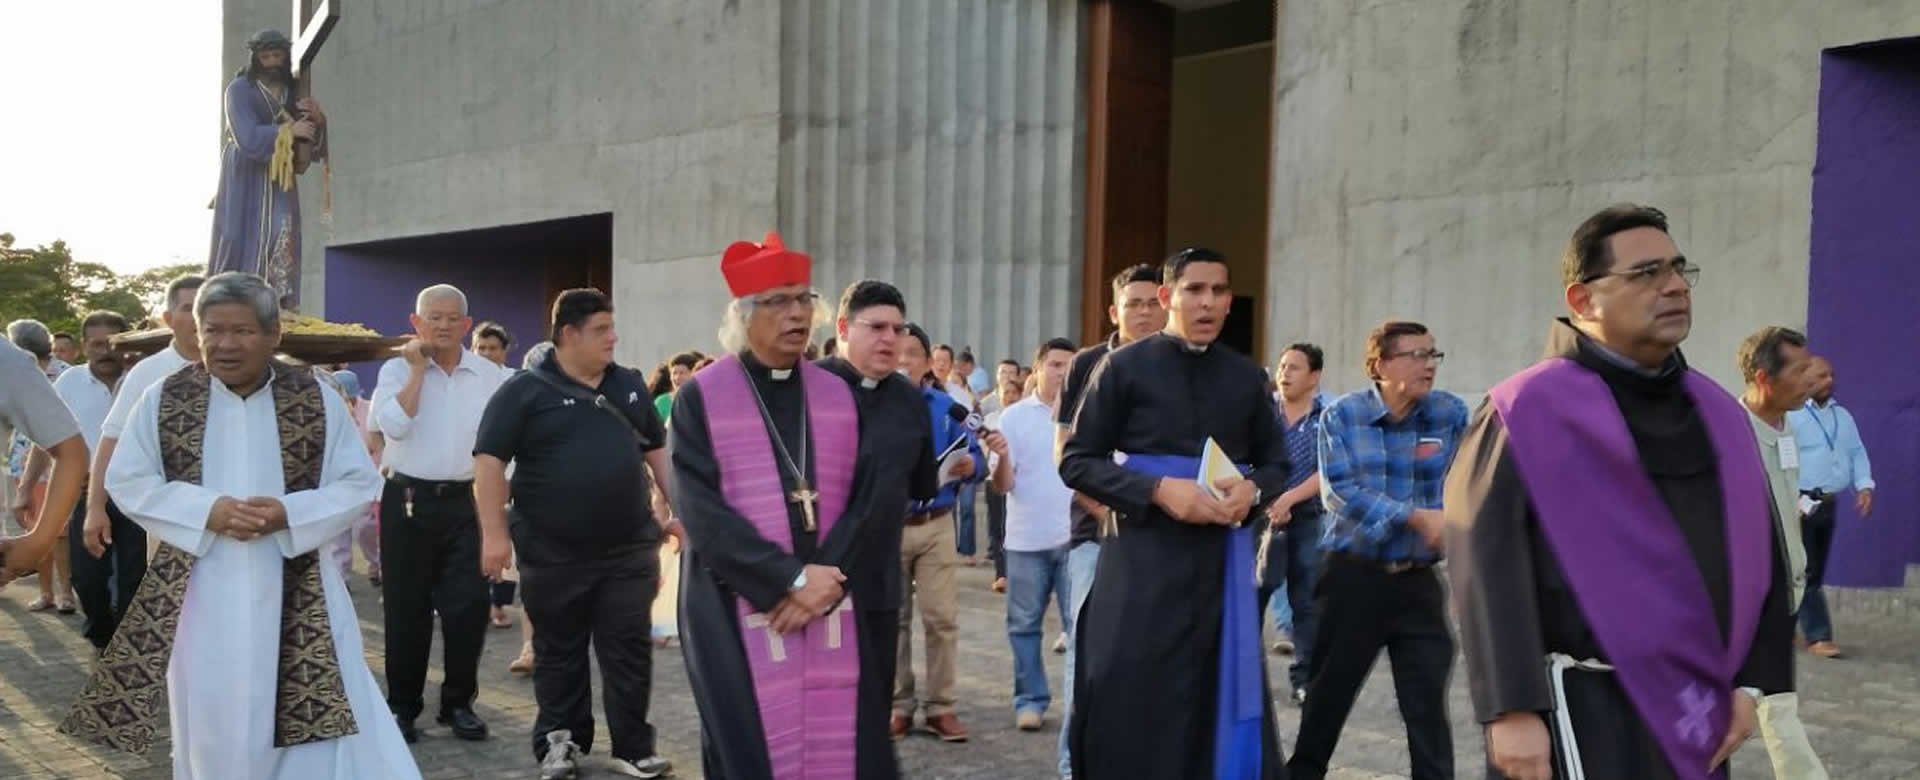 Cardenal Leopoldo participa del viacrucis del segundo viernes de cuaresma